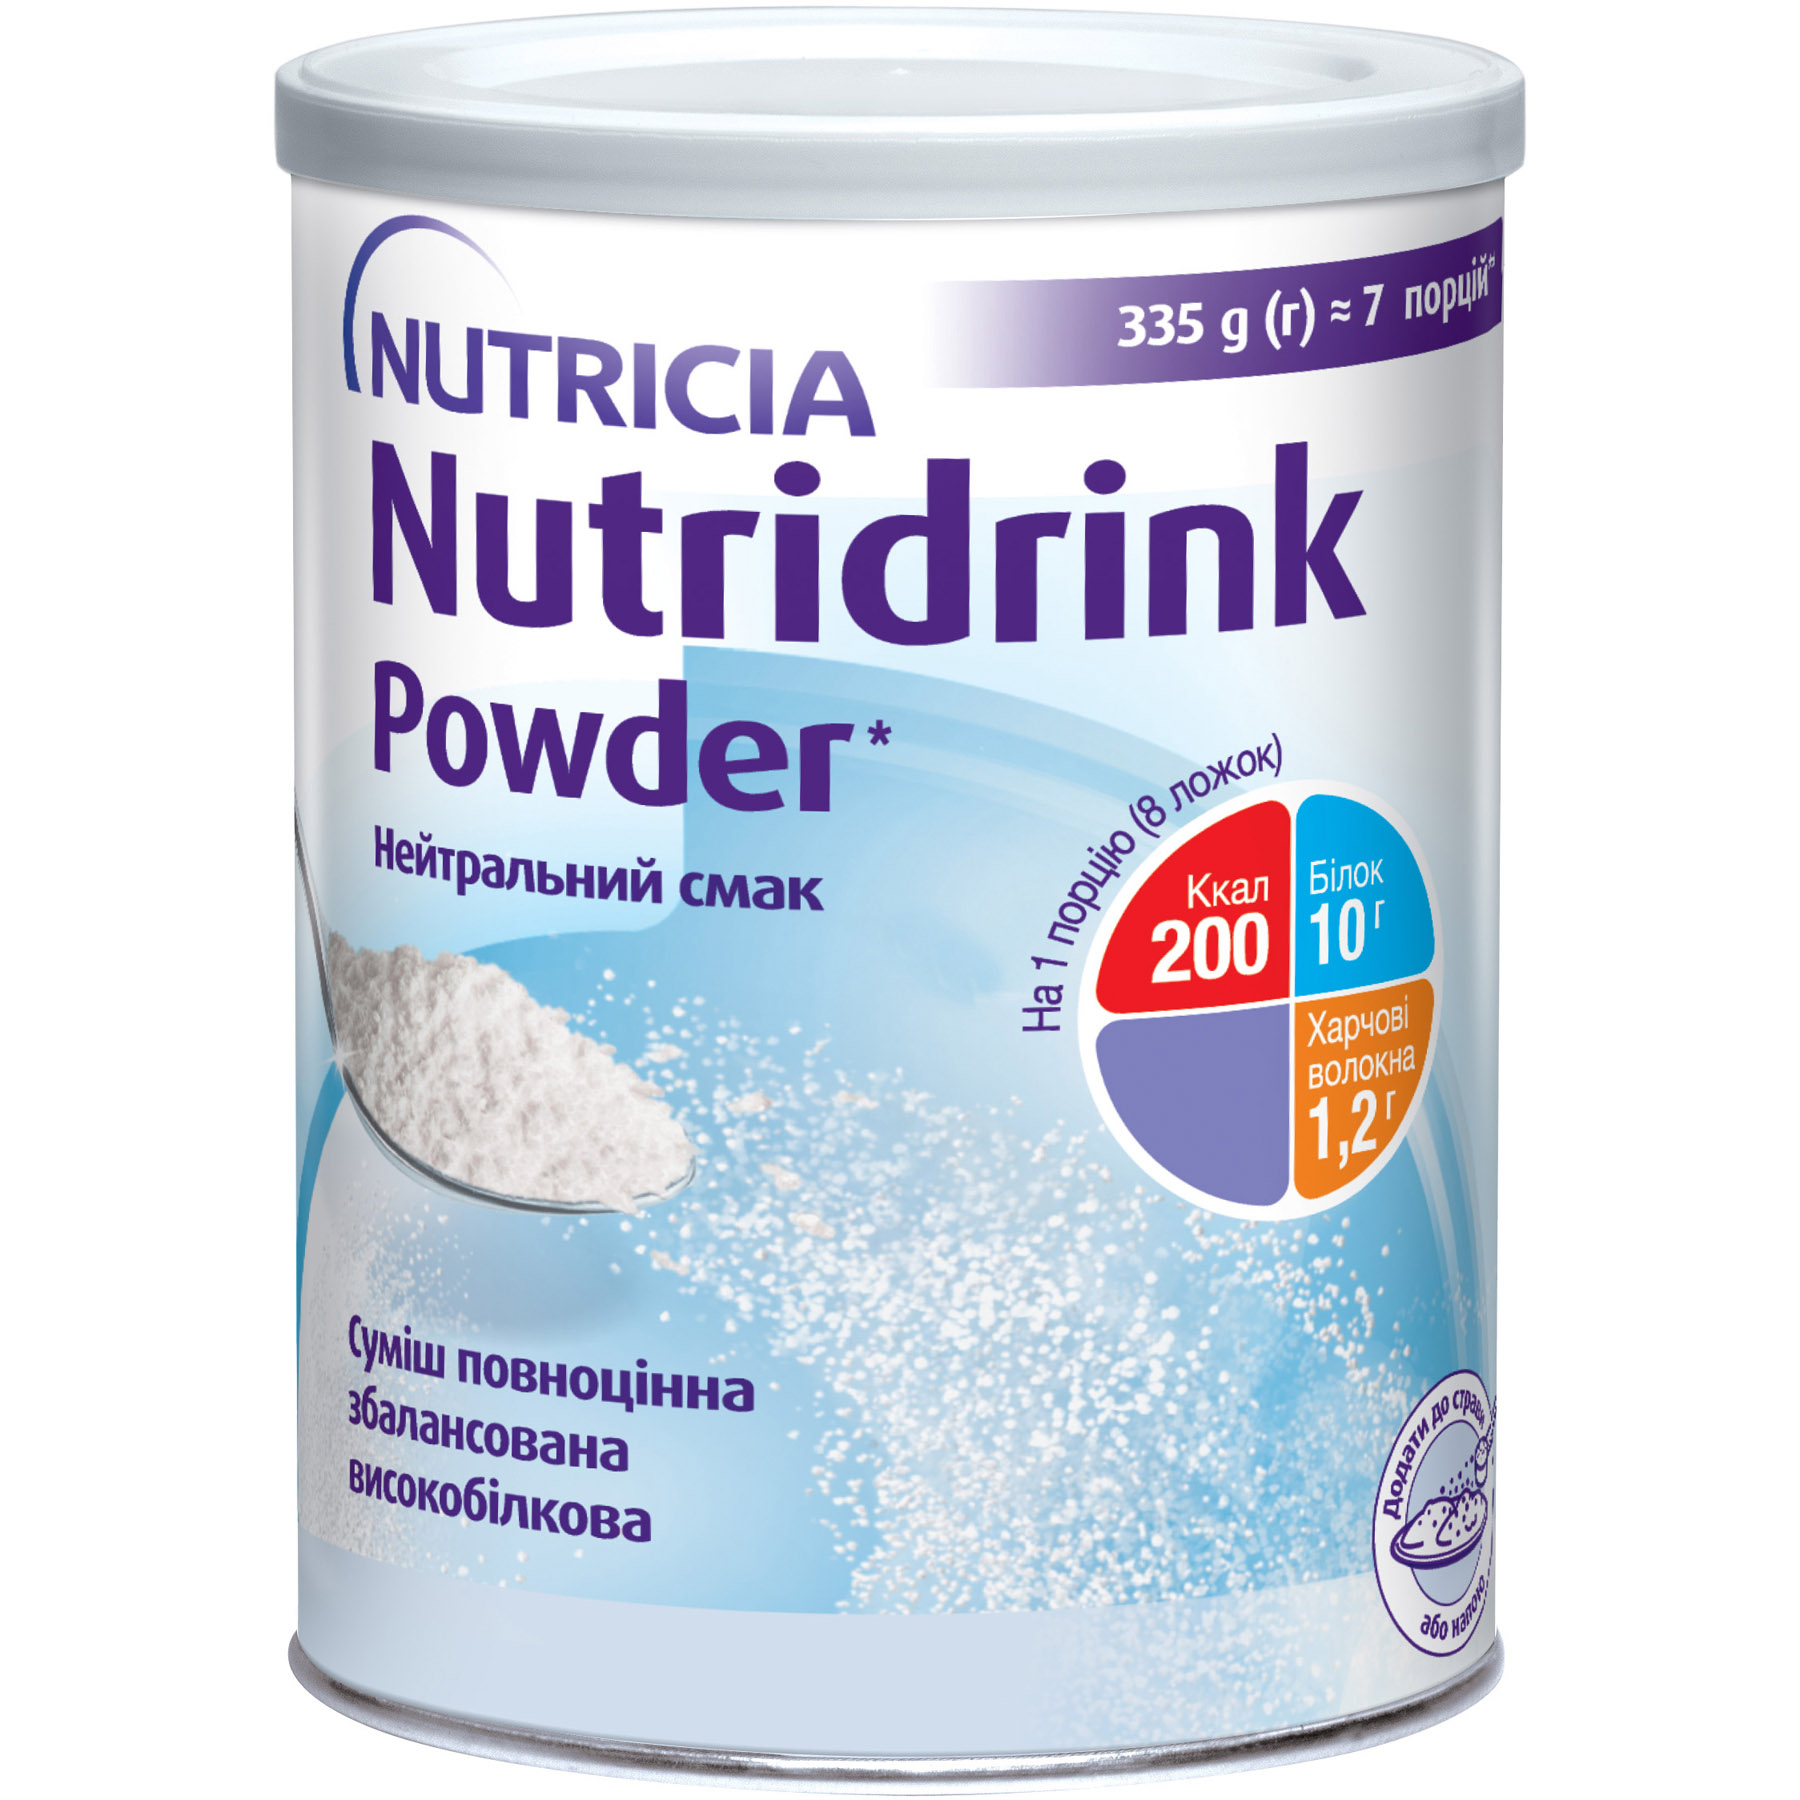 Энтеральное питание Nutricia Nutridrink Powder с нейтральным вкусом 335 г - фото 1